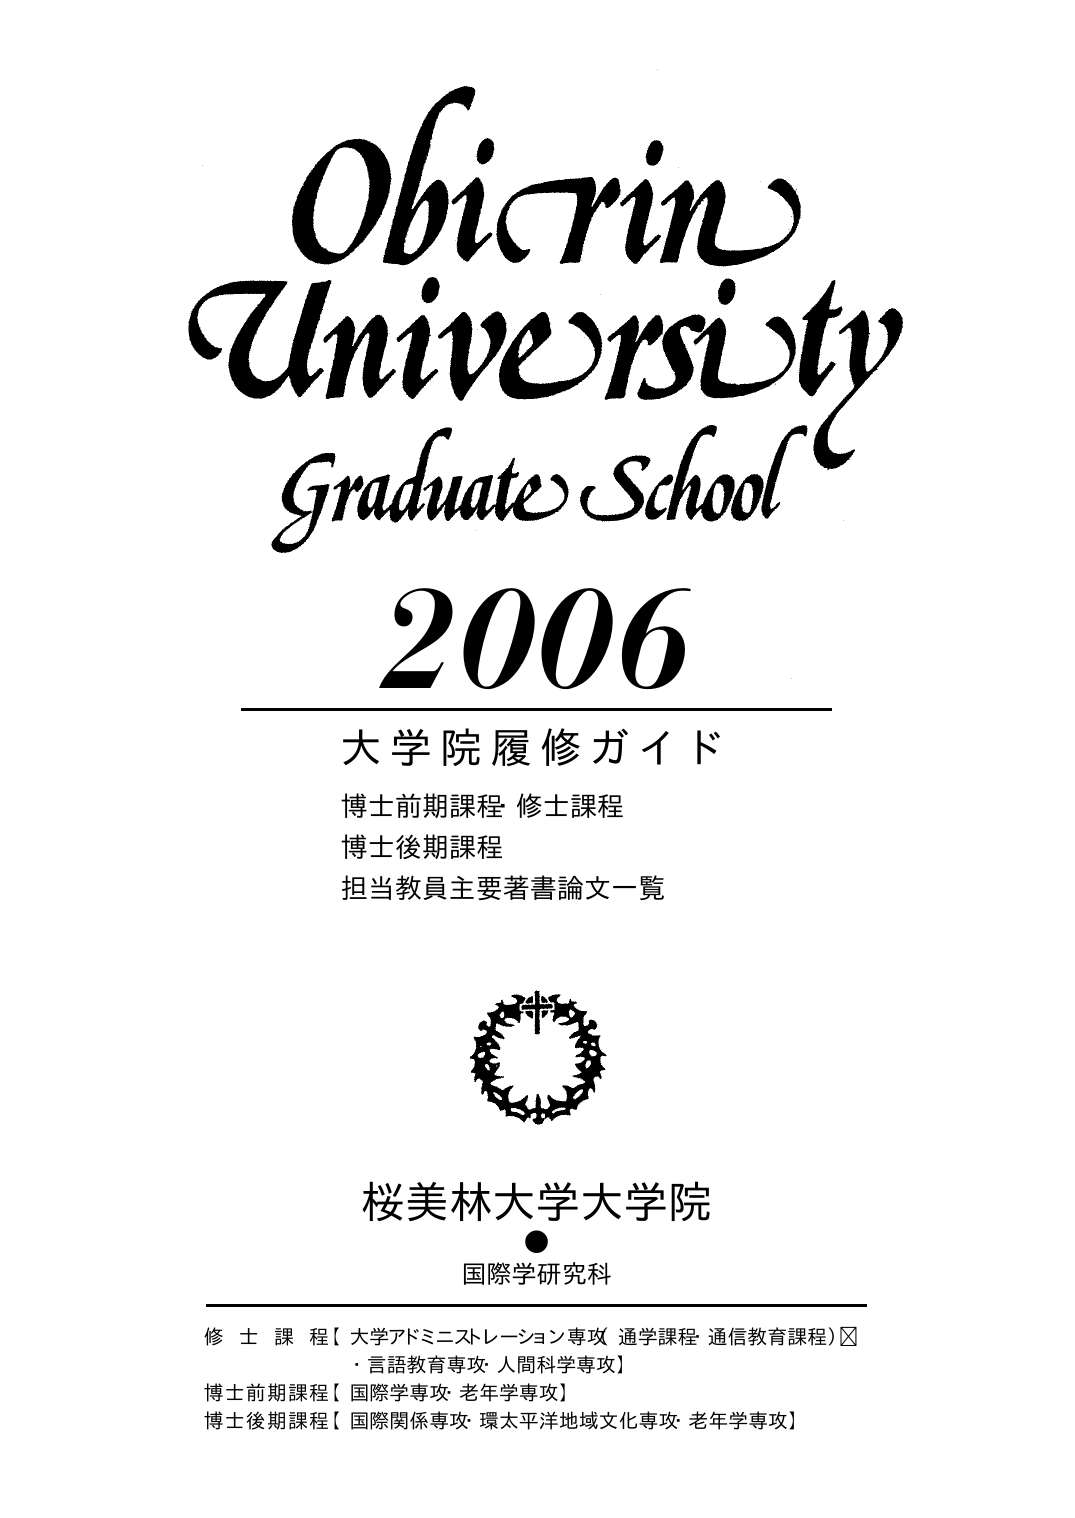 2006年度 大学院履修ガイド (PDFファイル)